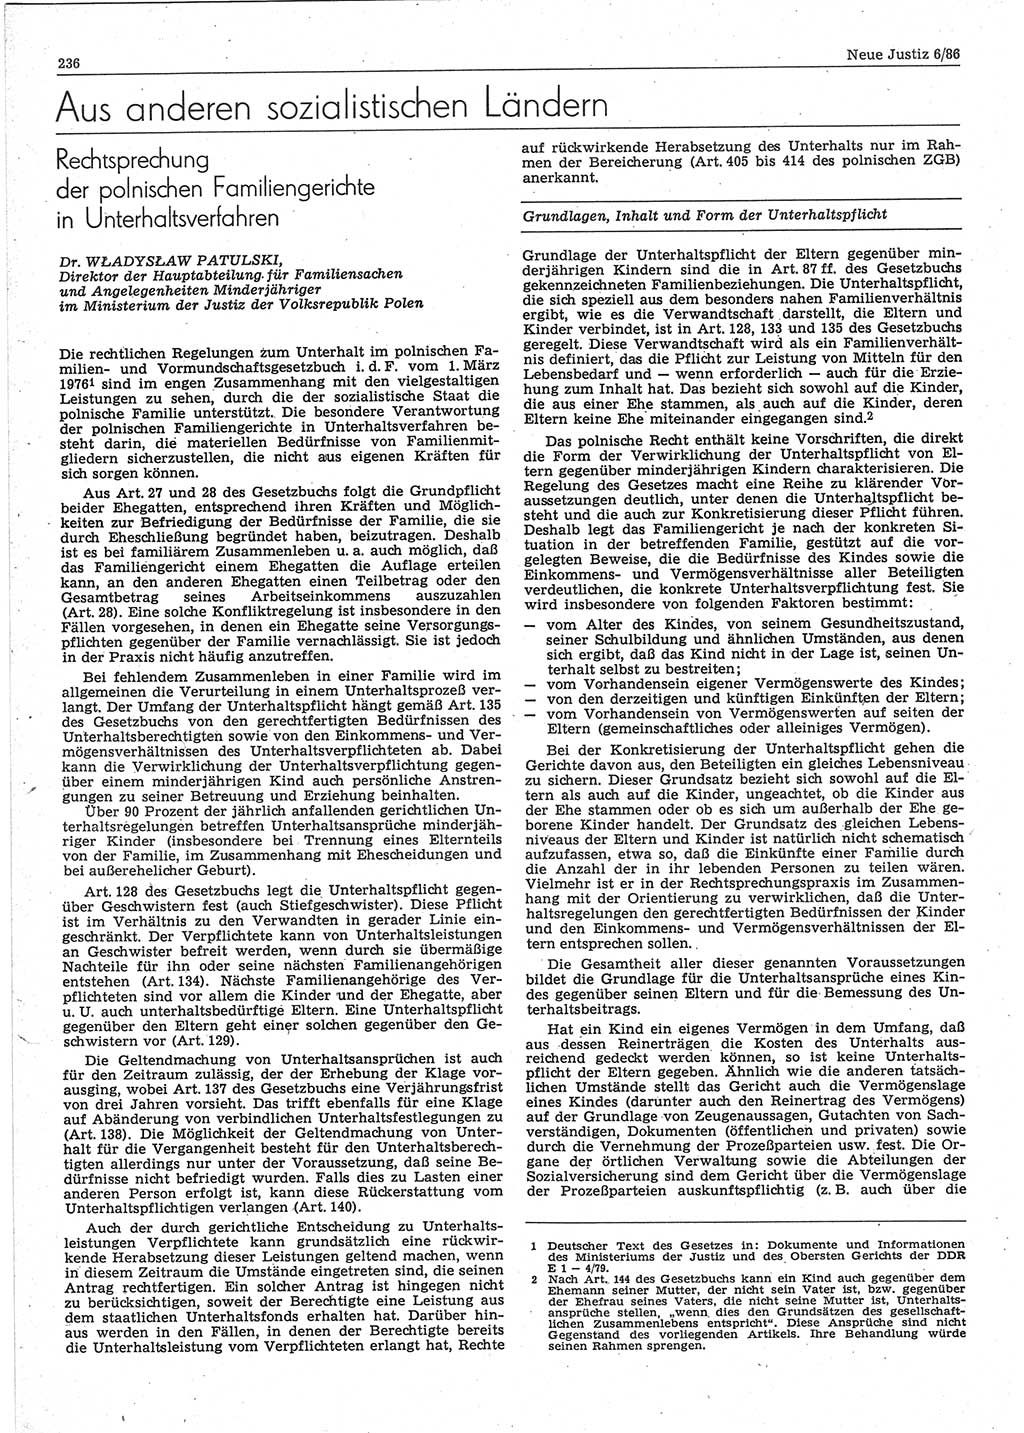 Neue Justiz (NJ), Zeitschrift für sozialistisches Recht und Gesetzlichkeit [Deutsche Demokratische Republik (DDR)], 40. Jahrgang 1986, Seite 236 (NJ DDR 1986, S. 236)